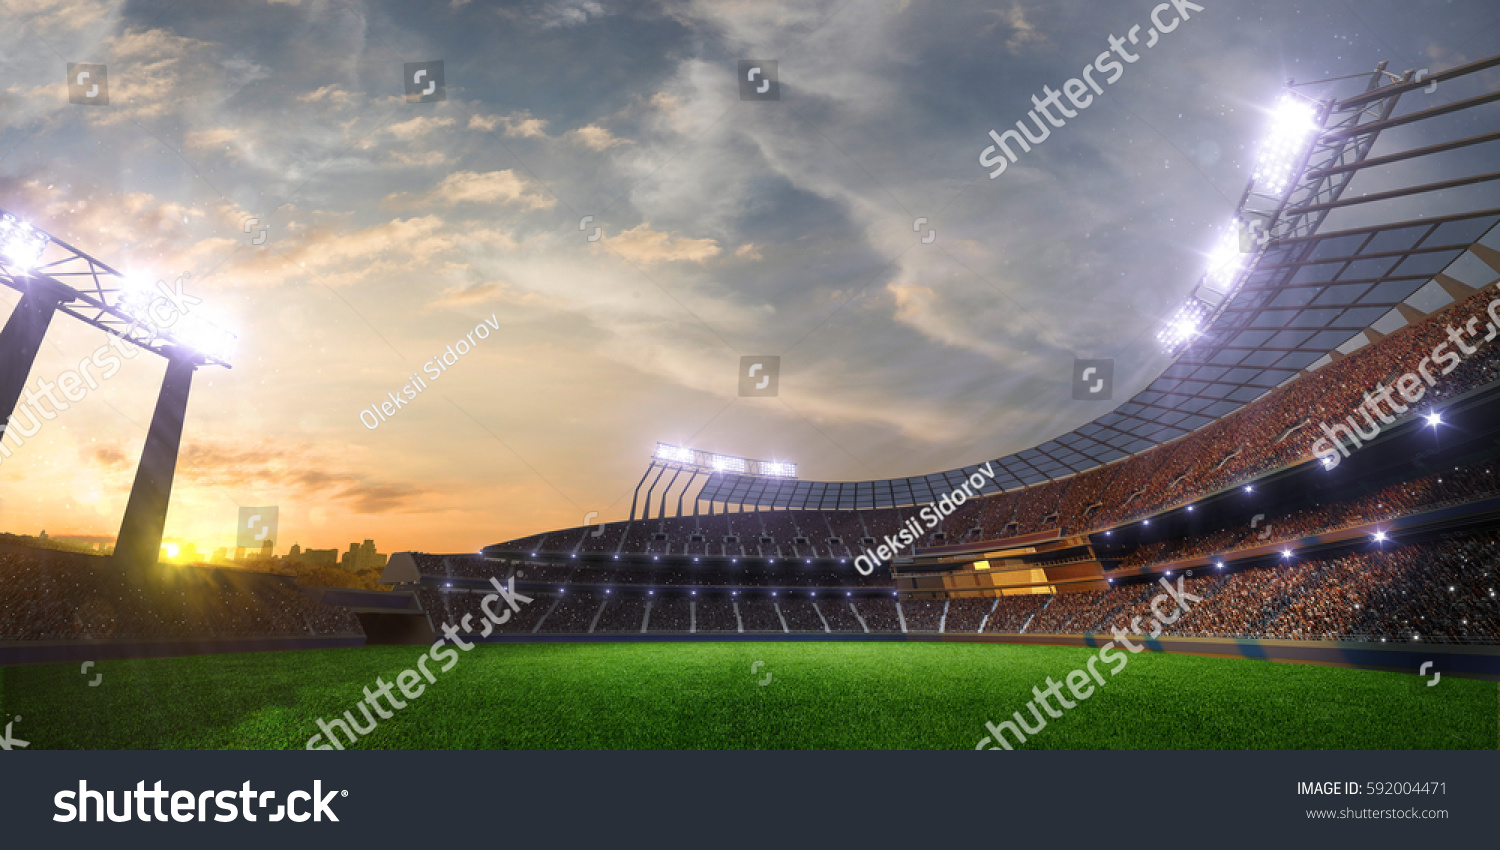 スタジアムの夕日と人々のファン 3dレンダリングイラスト曇り空 のイラスト素材